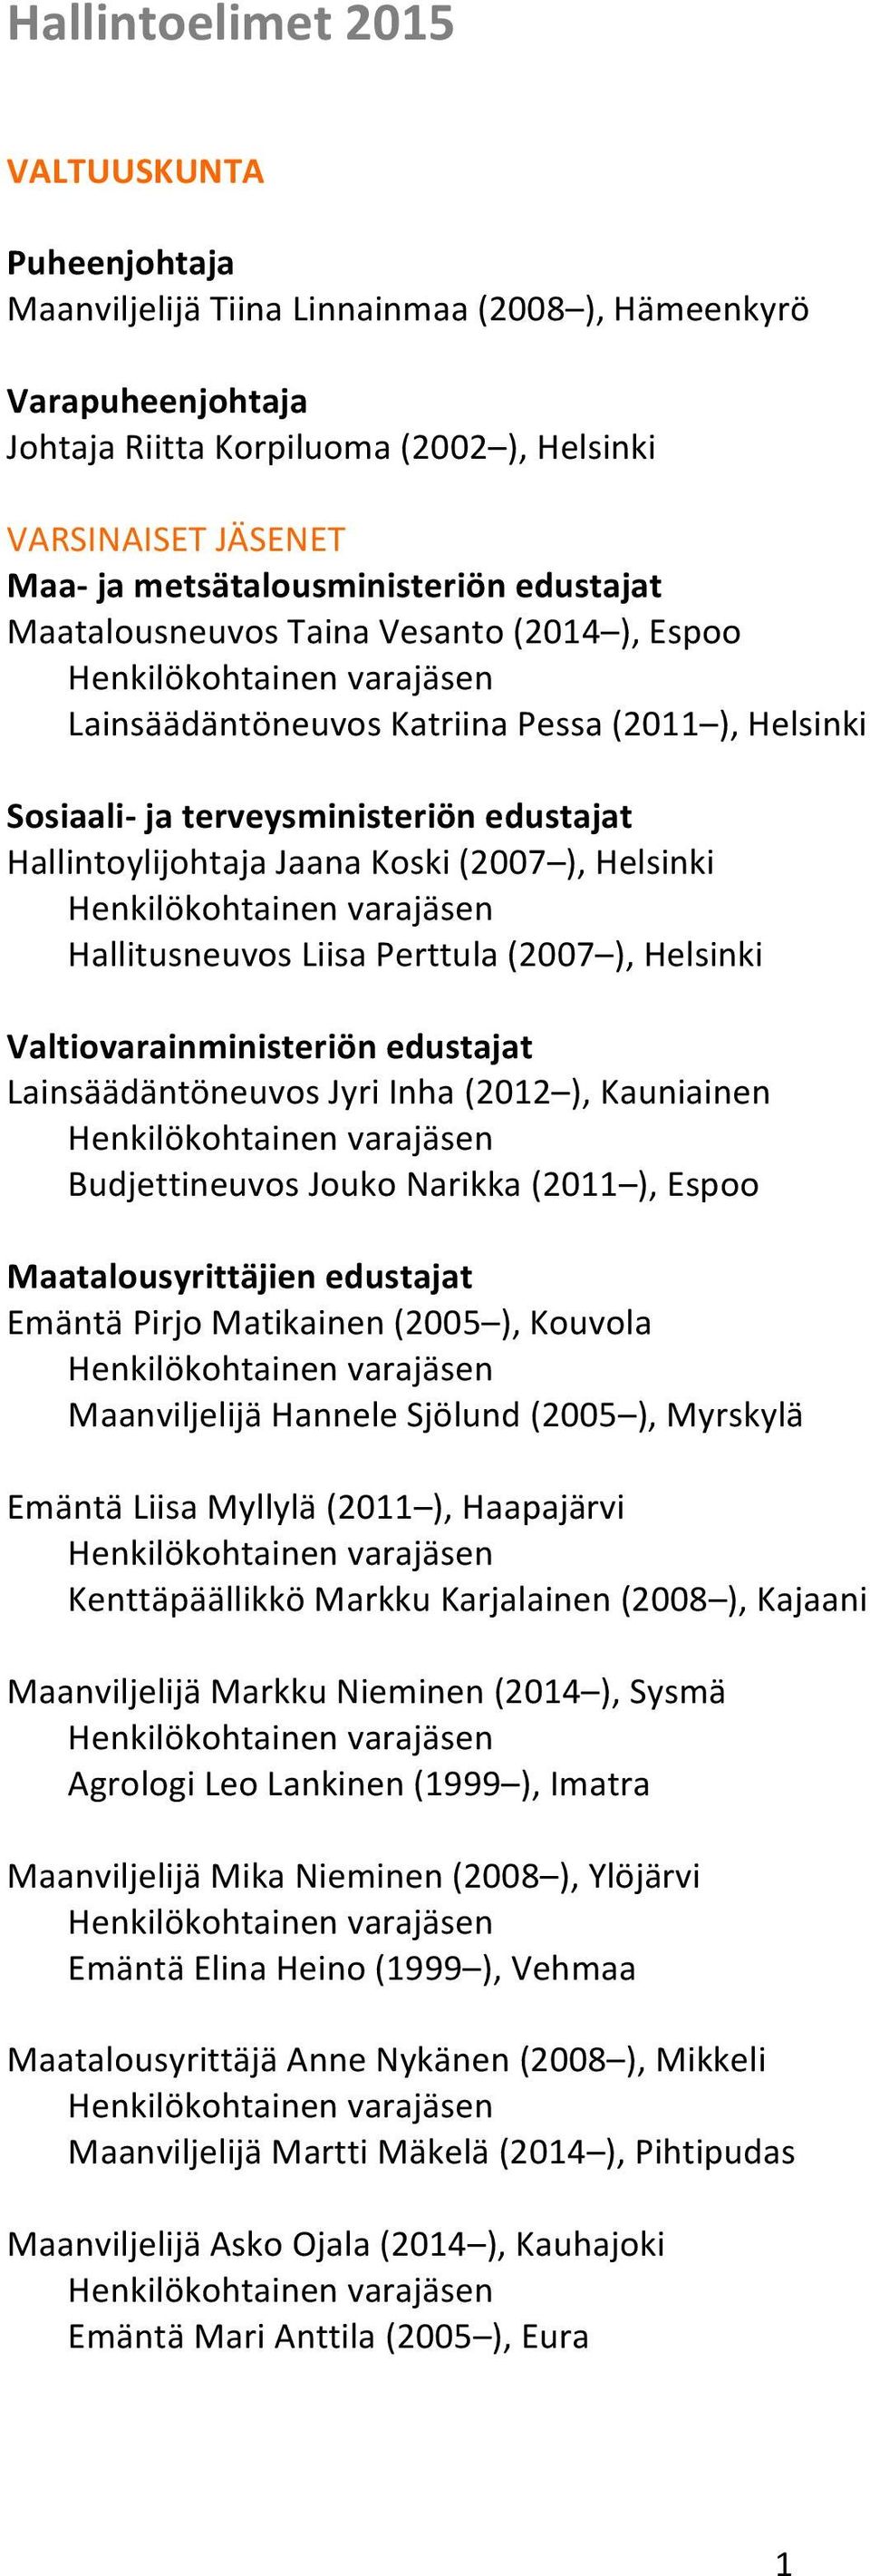 Hallitusneuvos Liisa Perttula (2007 ), Helsinki Valtiovarainministeriön edustajat Lainsäädäntöneuvos Jyri Inha (2012 ), Kauniainen Budjettineuvos Jouko Narikka (2011 ), Espoo Maatalousyrittäjien